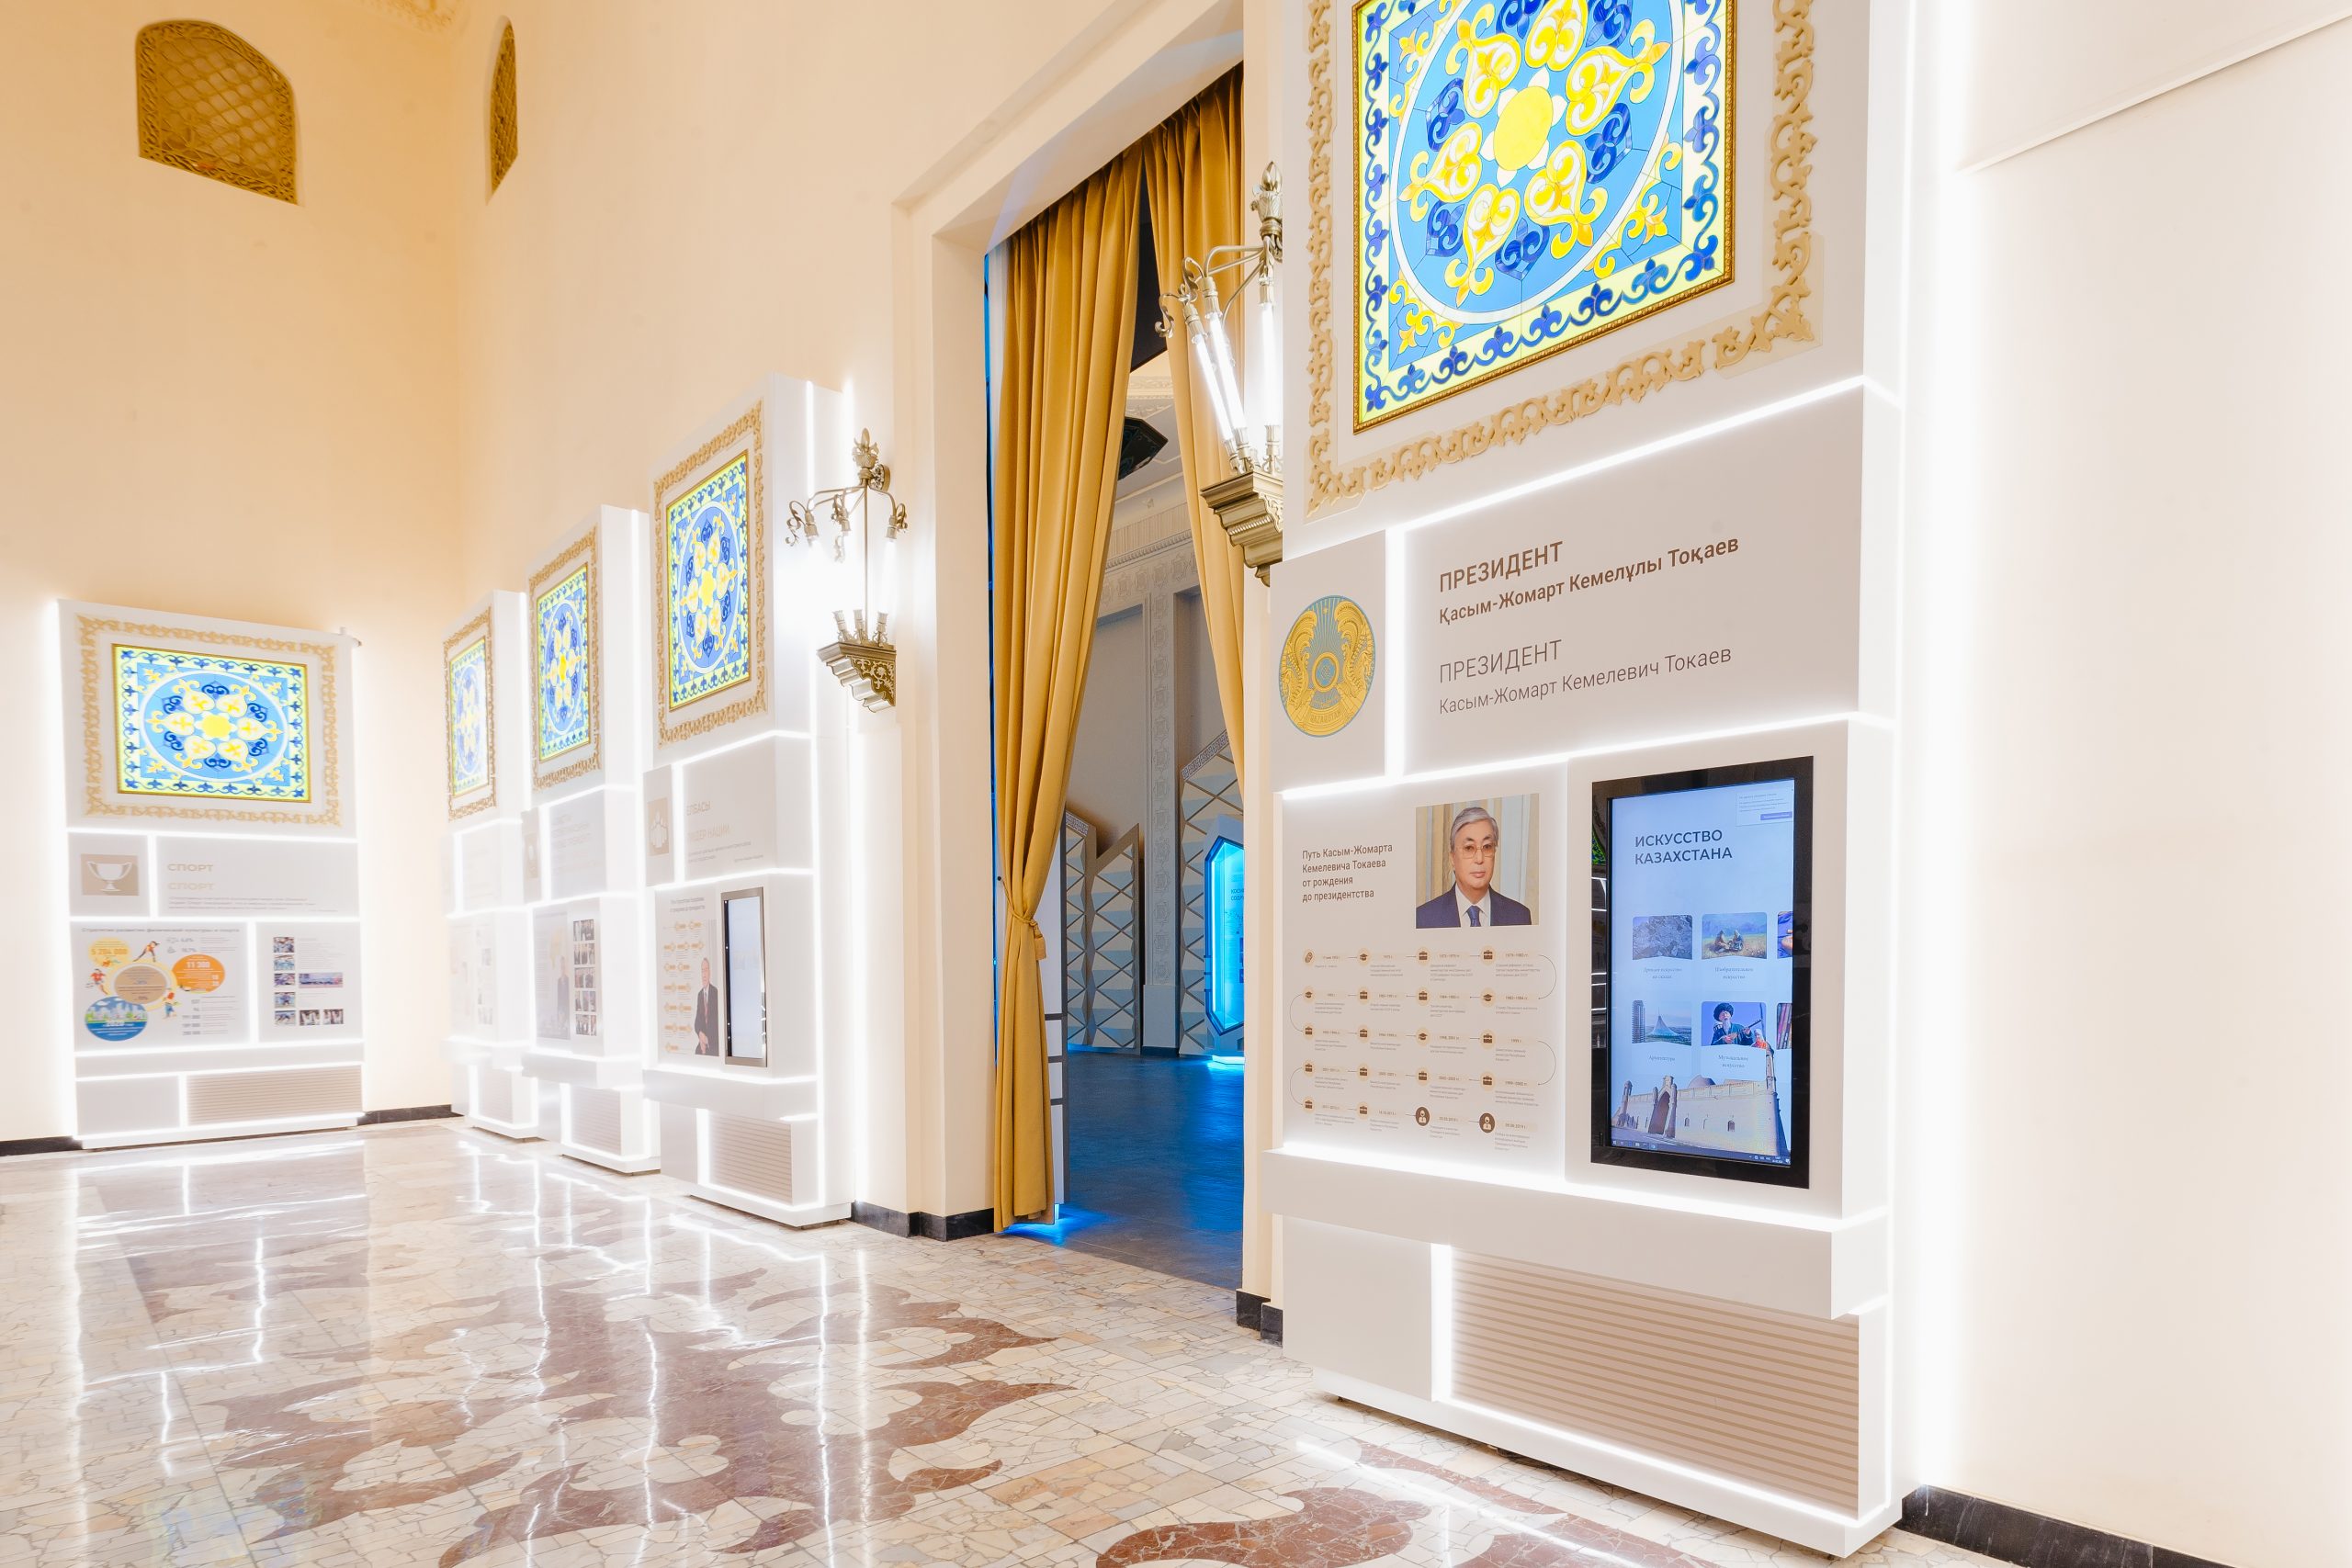 “Kazakhstan” pavilion is opened at VDNH after restoration